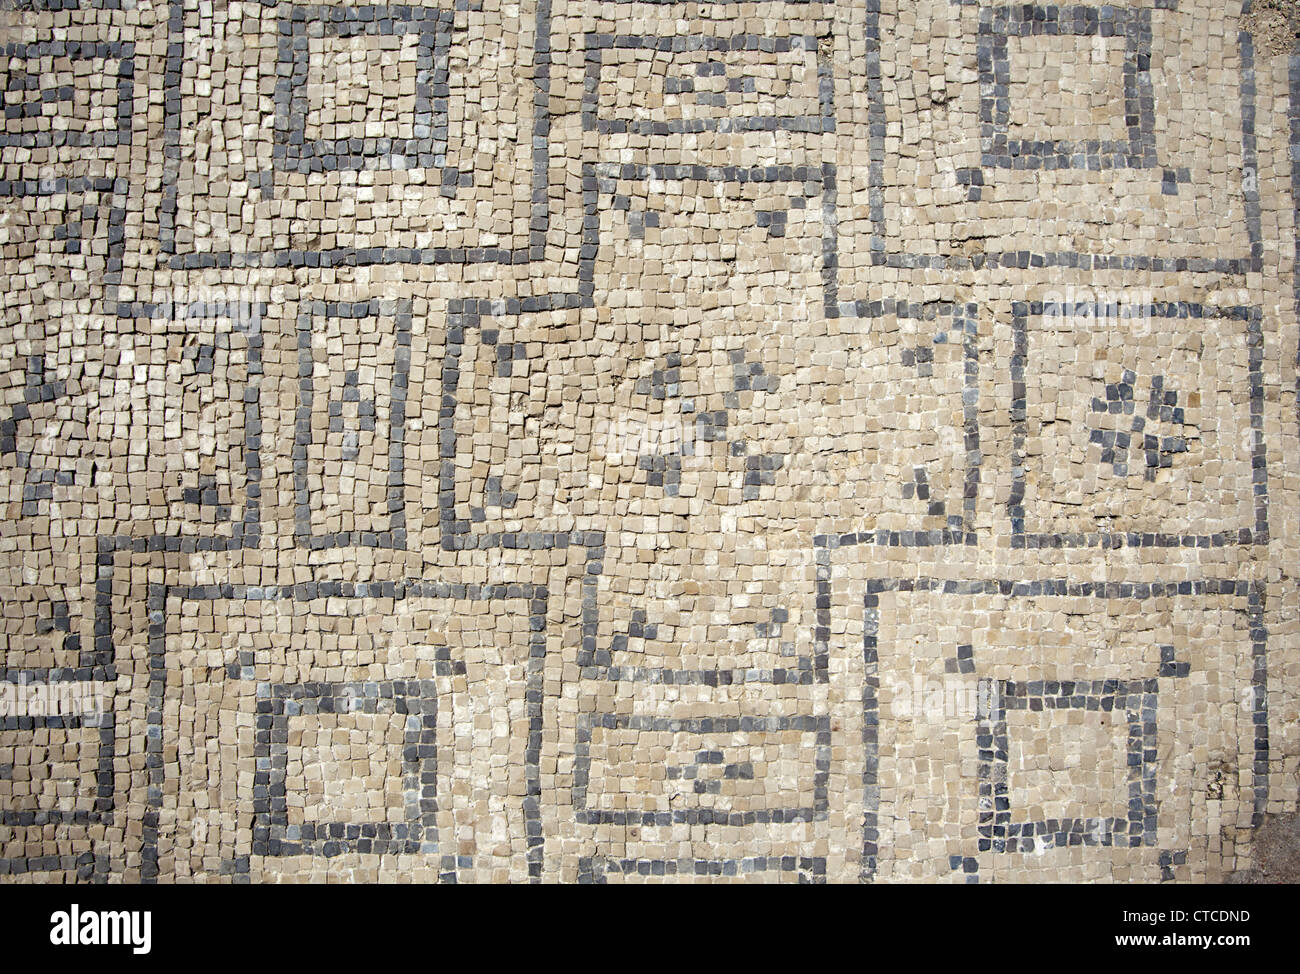 Le piastrelle del pavimento in corrispondenza di un antico bagno romano presso il sito archeologico di Beit She'an National Park, Israele Foto Stock